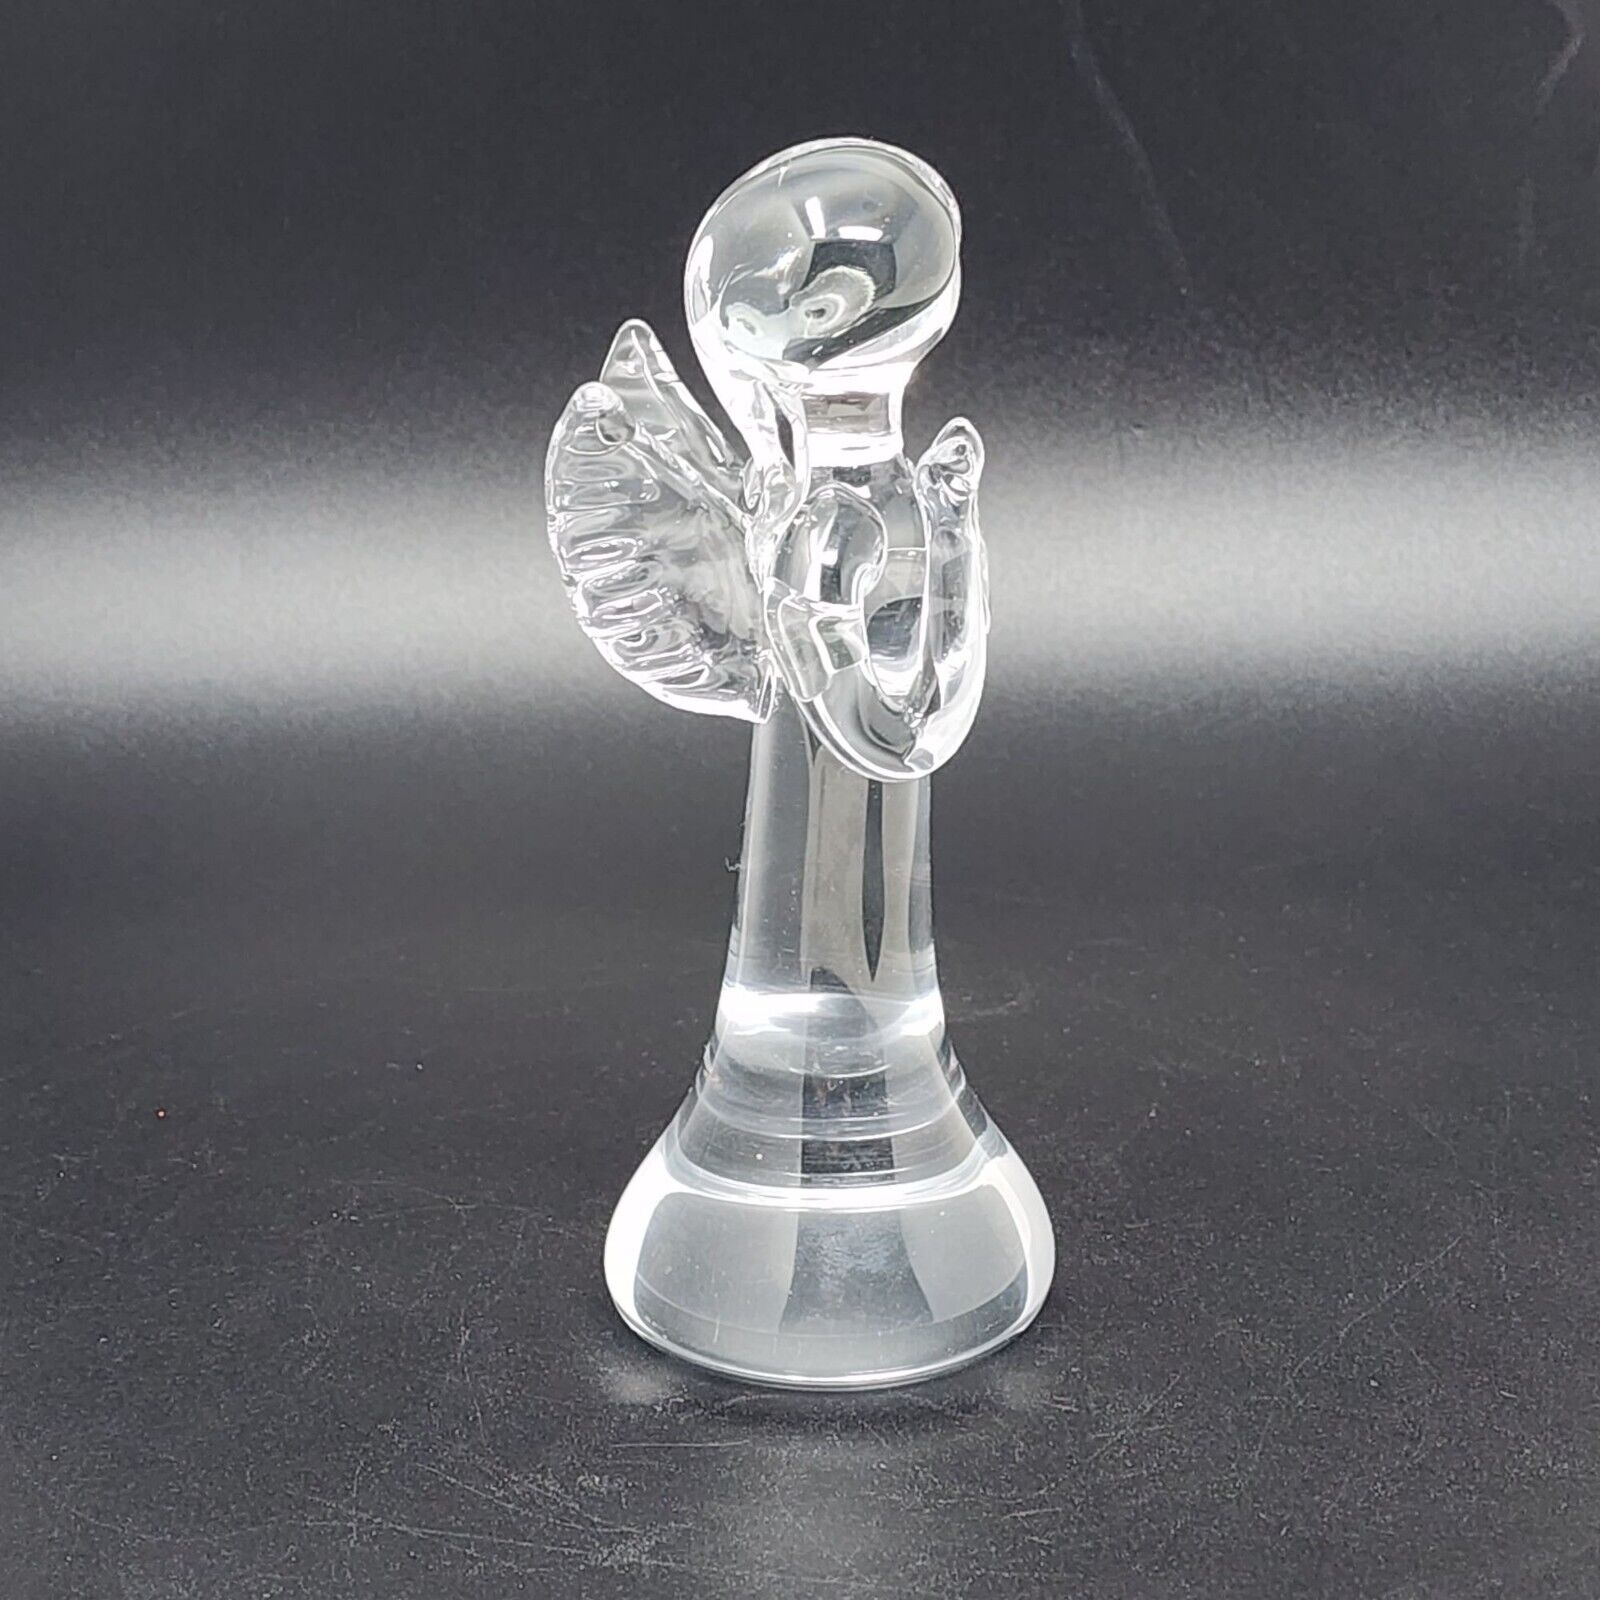 Crystal Angel Figure Signed Jon 76 Art Minimalistic 5.75